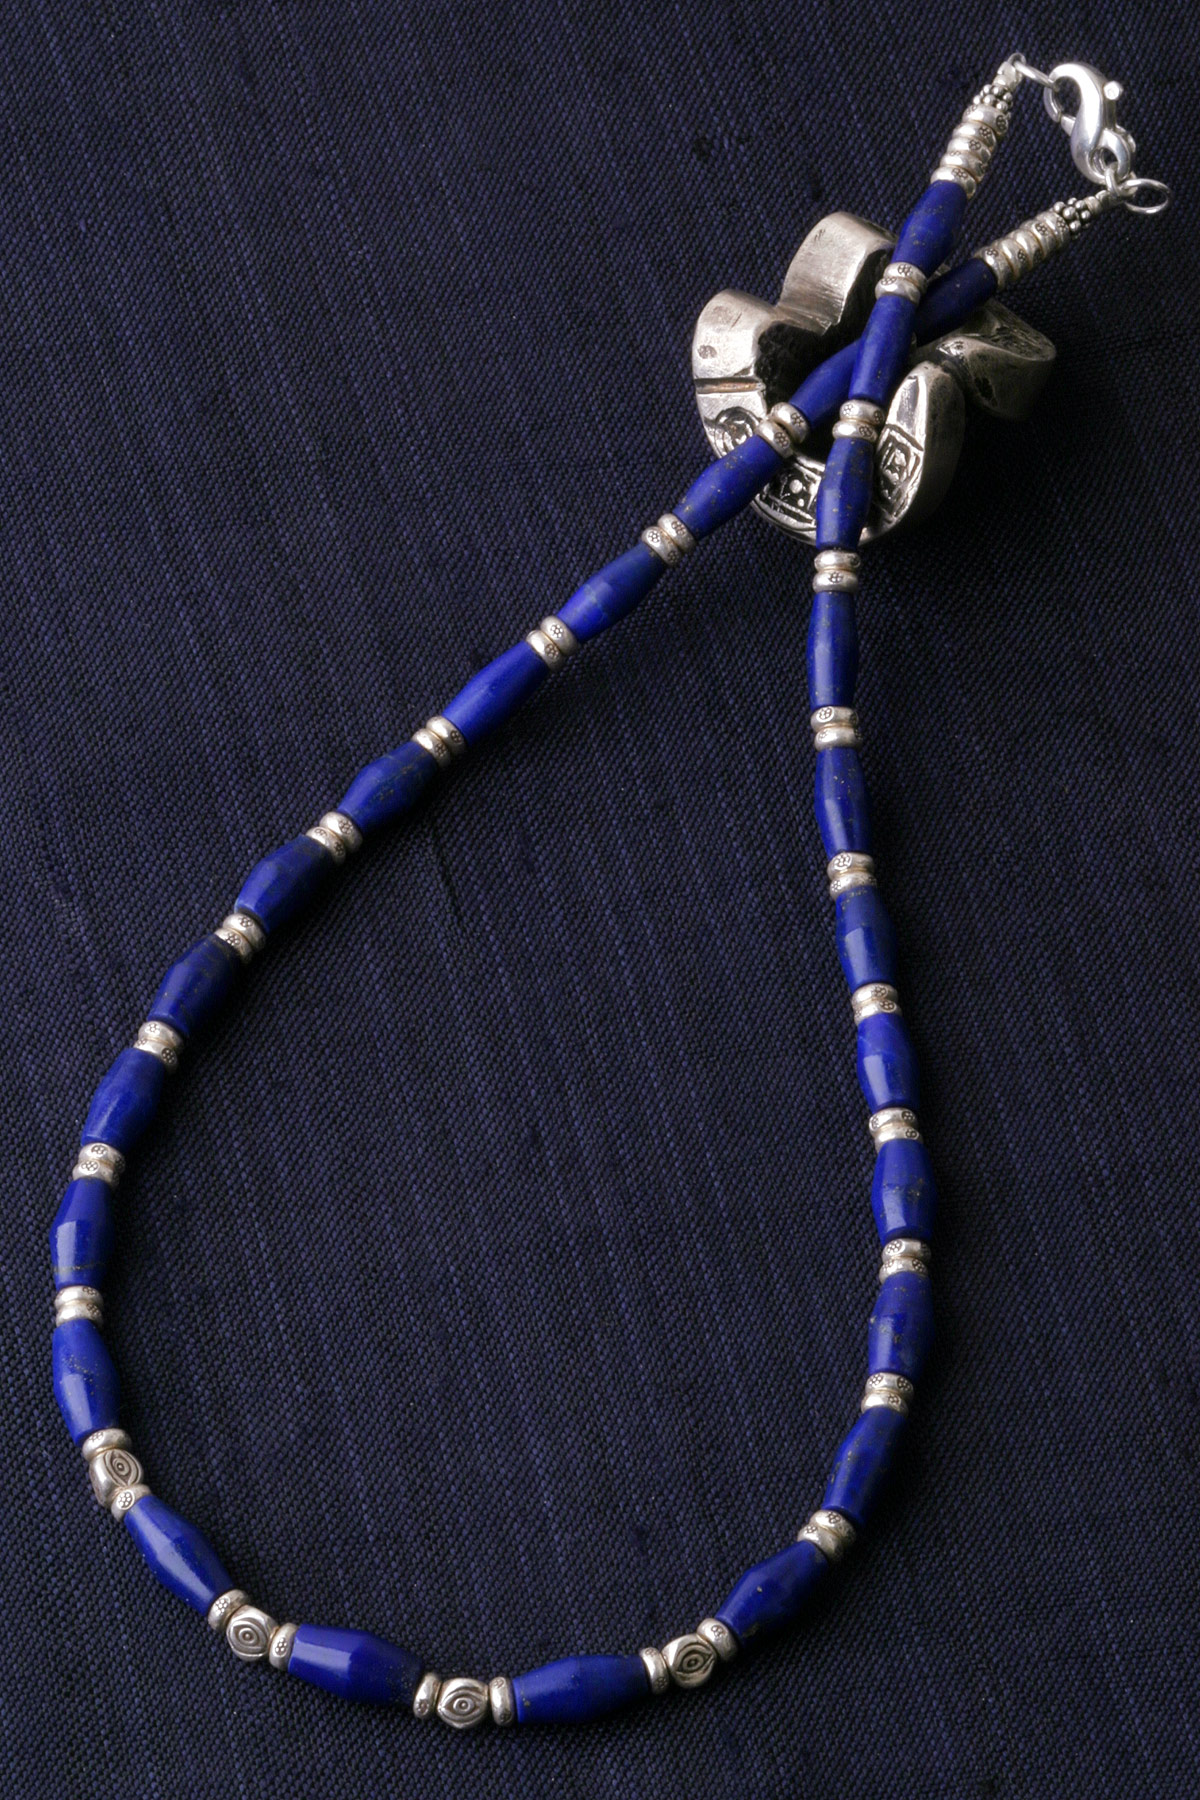 カレン族シルバー 群青の瑠璃 ラピスラズリ ビーズ ネックレス 護身符 お守り 護身符 SV950 a03-45 - クロマニヨン